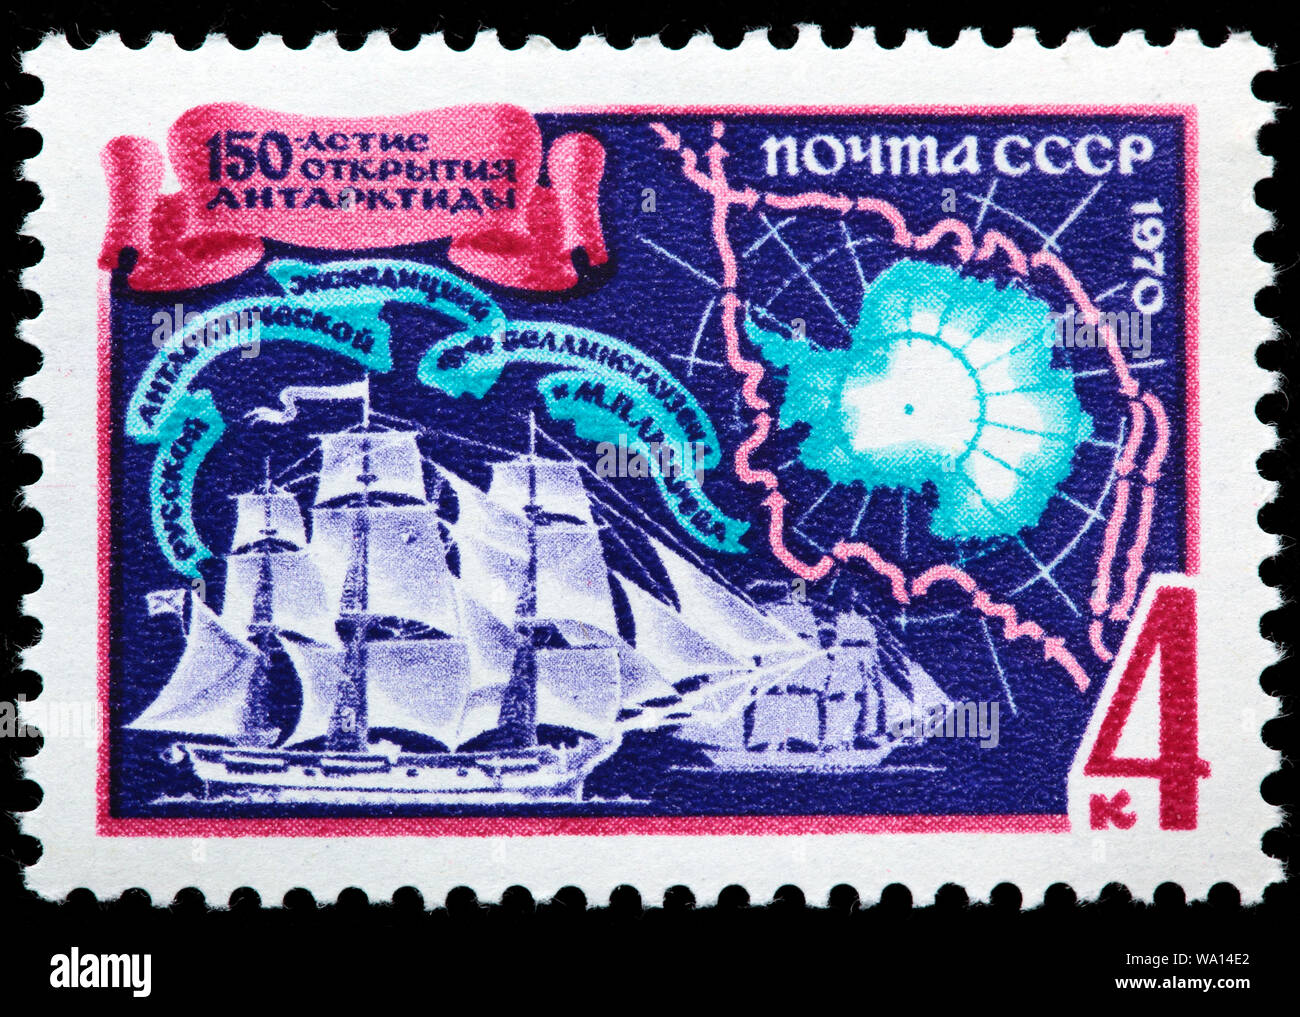 Antarktis Entdeckung von Fabian Gottlieb von Bellingshausen und Michail Lazarev, Briefmarke, Russland, UDSSR, 1970 Stockfoto